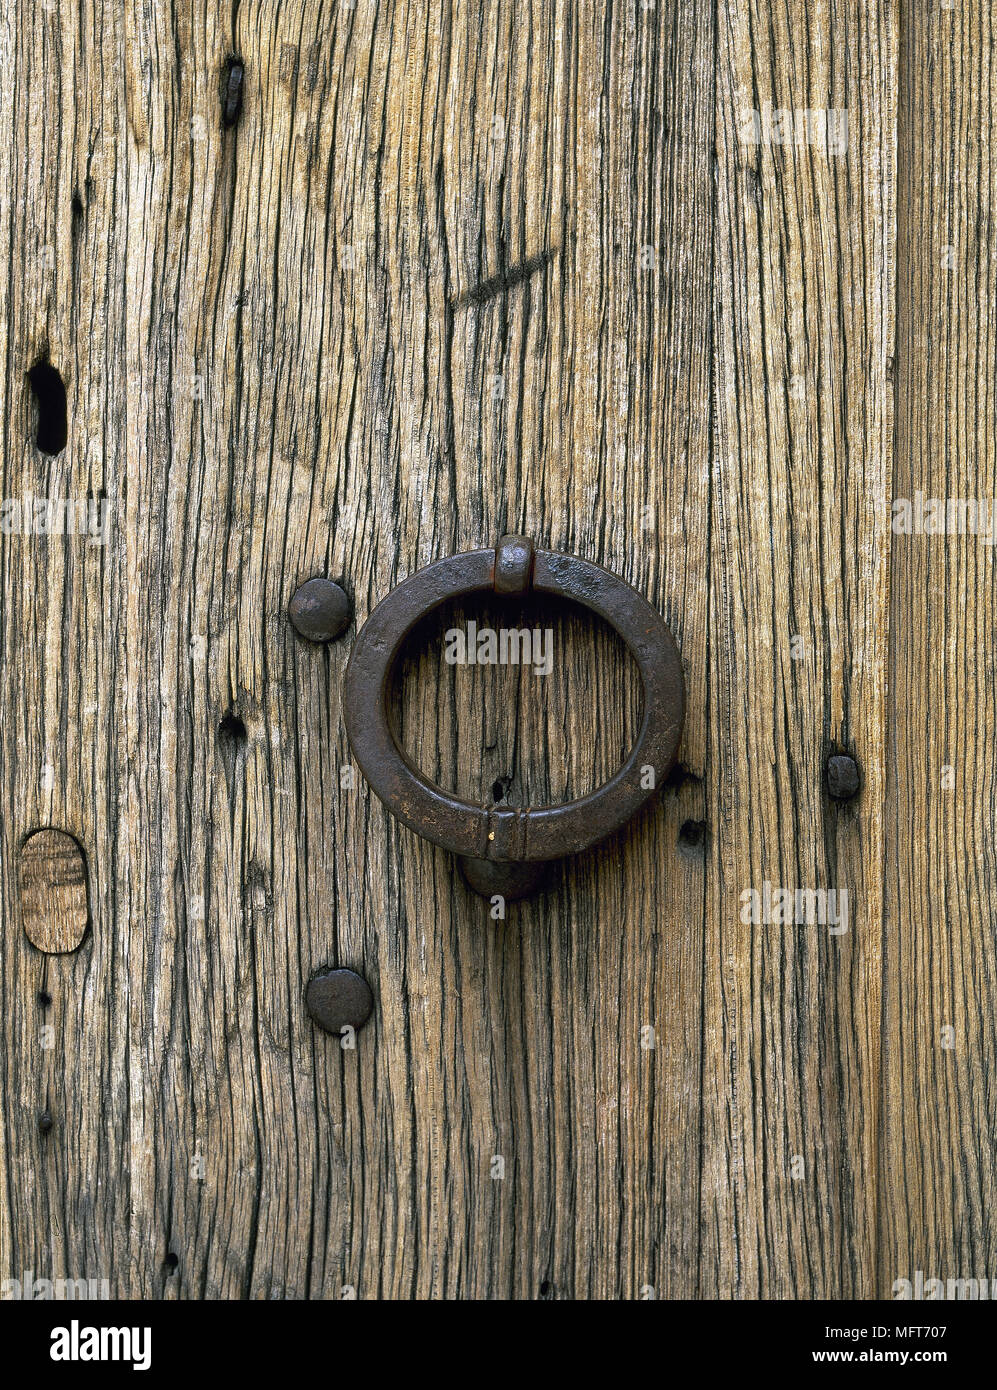 Détail de la porte en bois rustique poignée anneau de fer des textures rugueuses portes ferronnerie matériaux naturels Banque D'Images